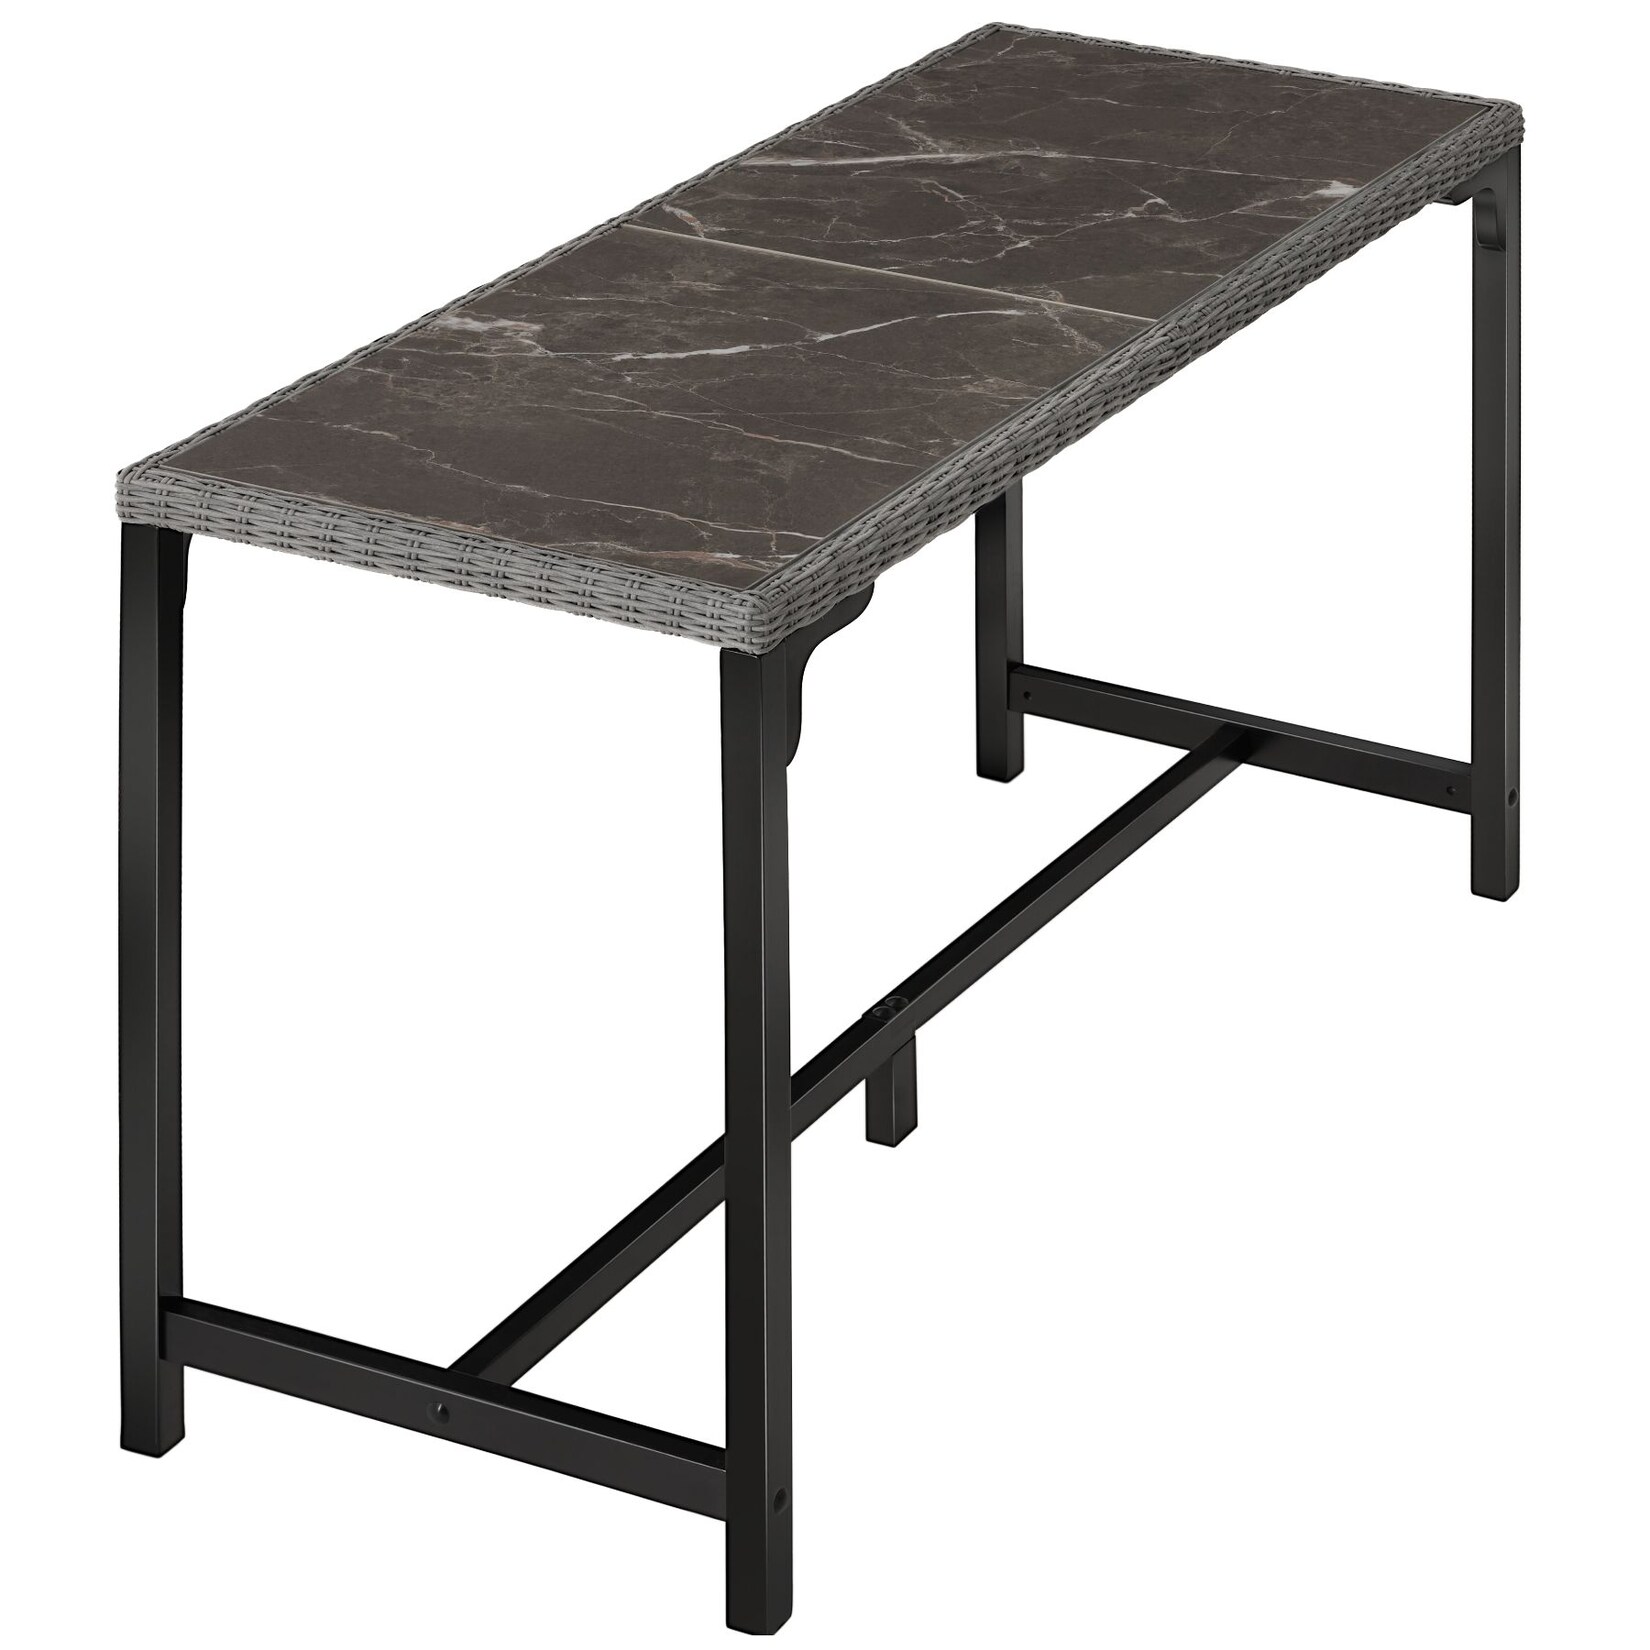 tectake® Rattan Tisch, mit Aluminium- und Holzgestell, wetterfest und UV-beständig, 161 x 64,5 x 99,5 cm